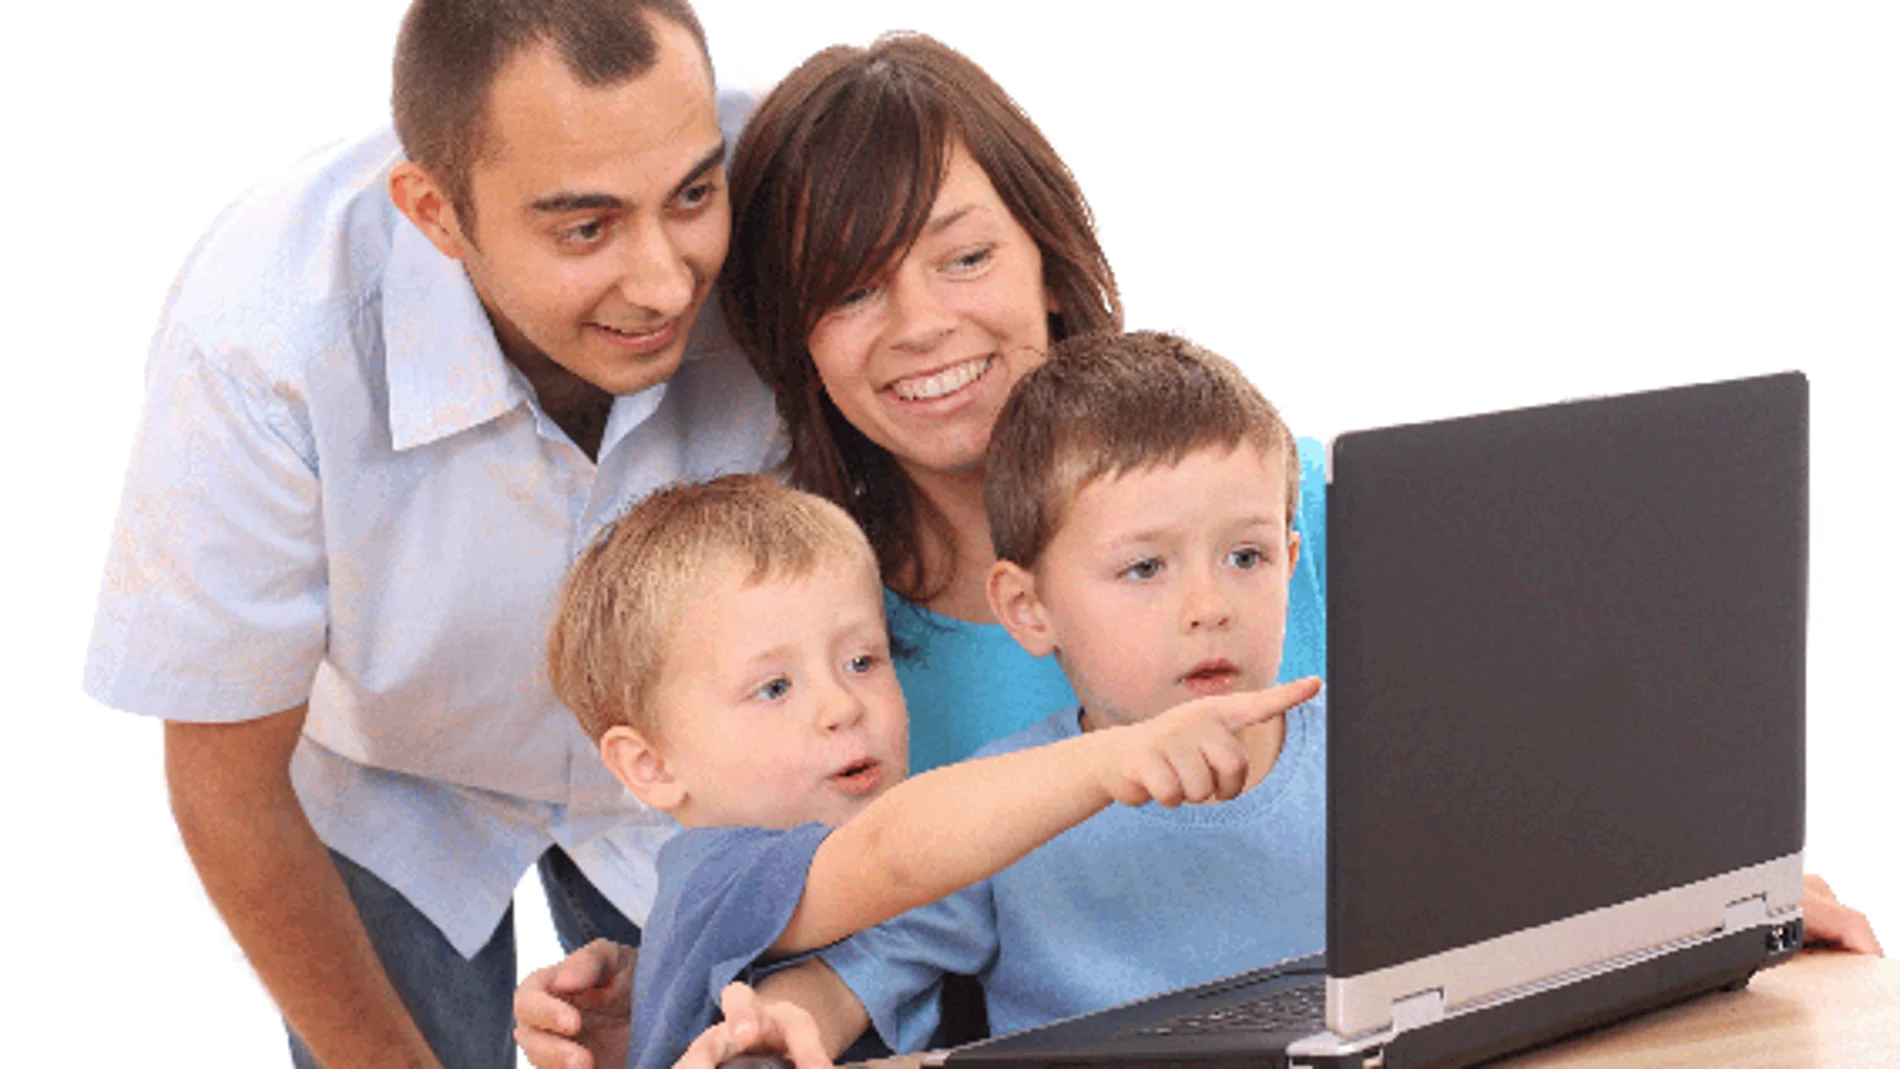 Los expertos recomiendan a los padres participar en la educación tecnológica de sus hijos.